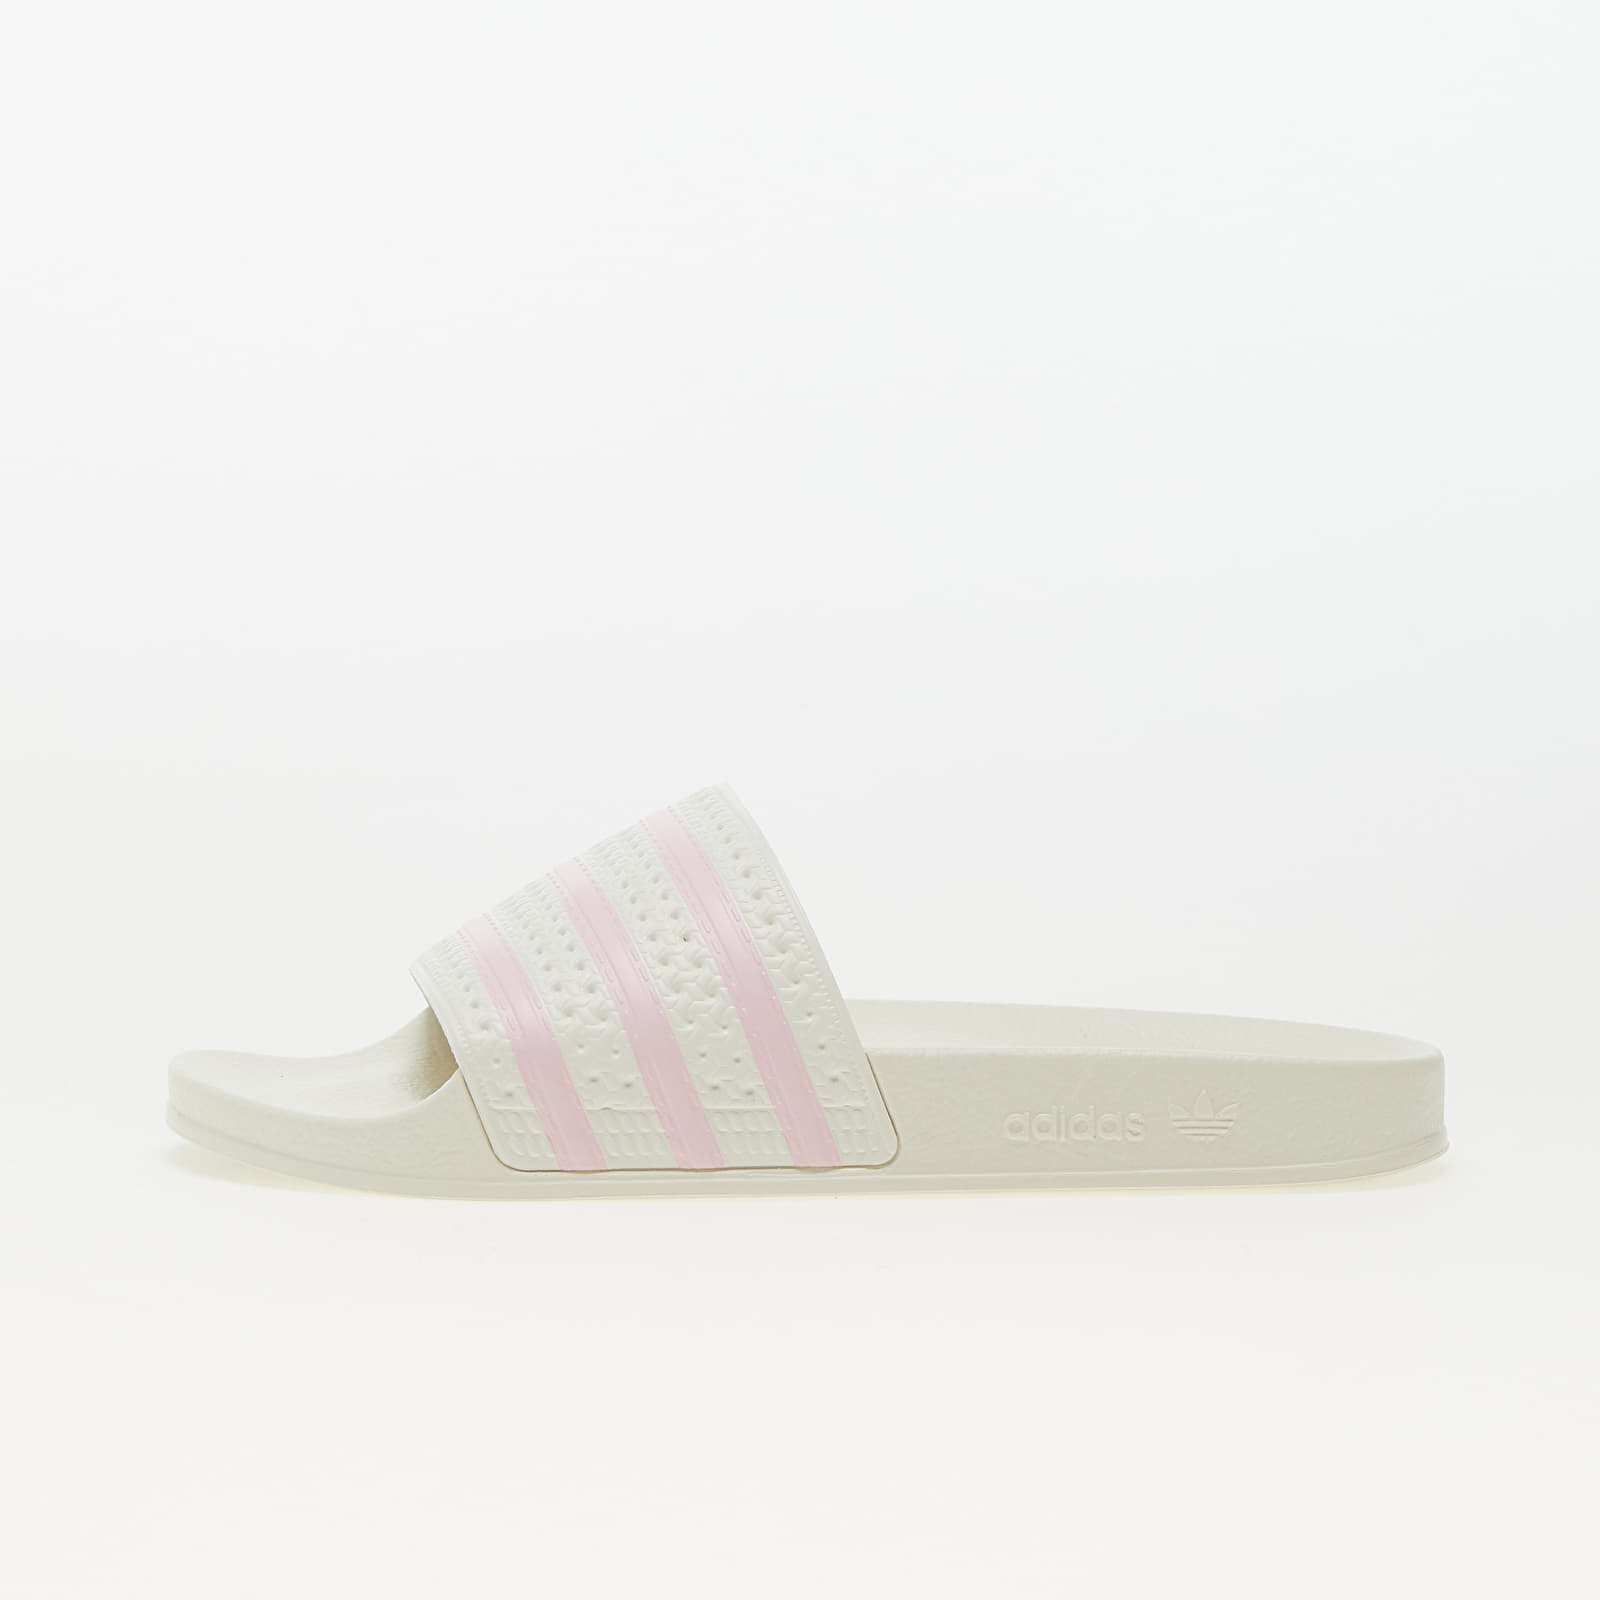 Scarpe estive, scarpe da ginnastica e infradito adidas Originals Adilette W Off White/ Clear Pink/ Off White